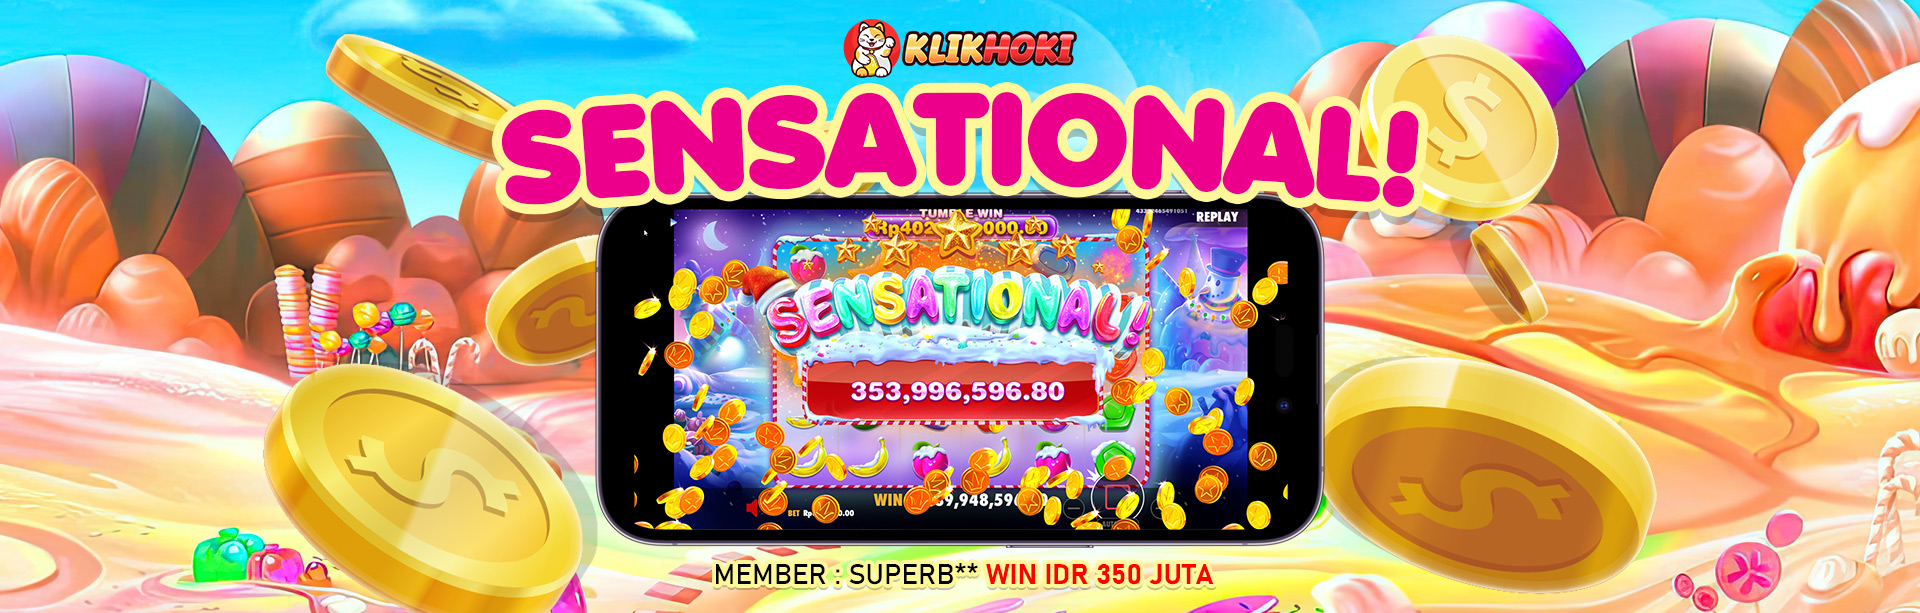 Member KLIKHOKI Menang Sensational 350 Juta